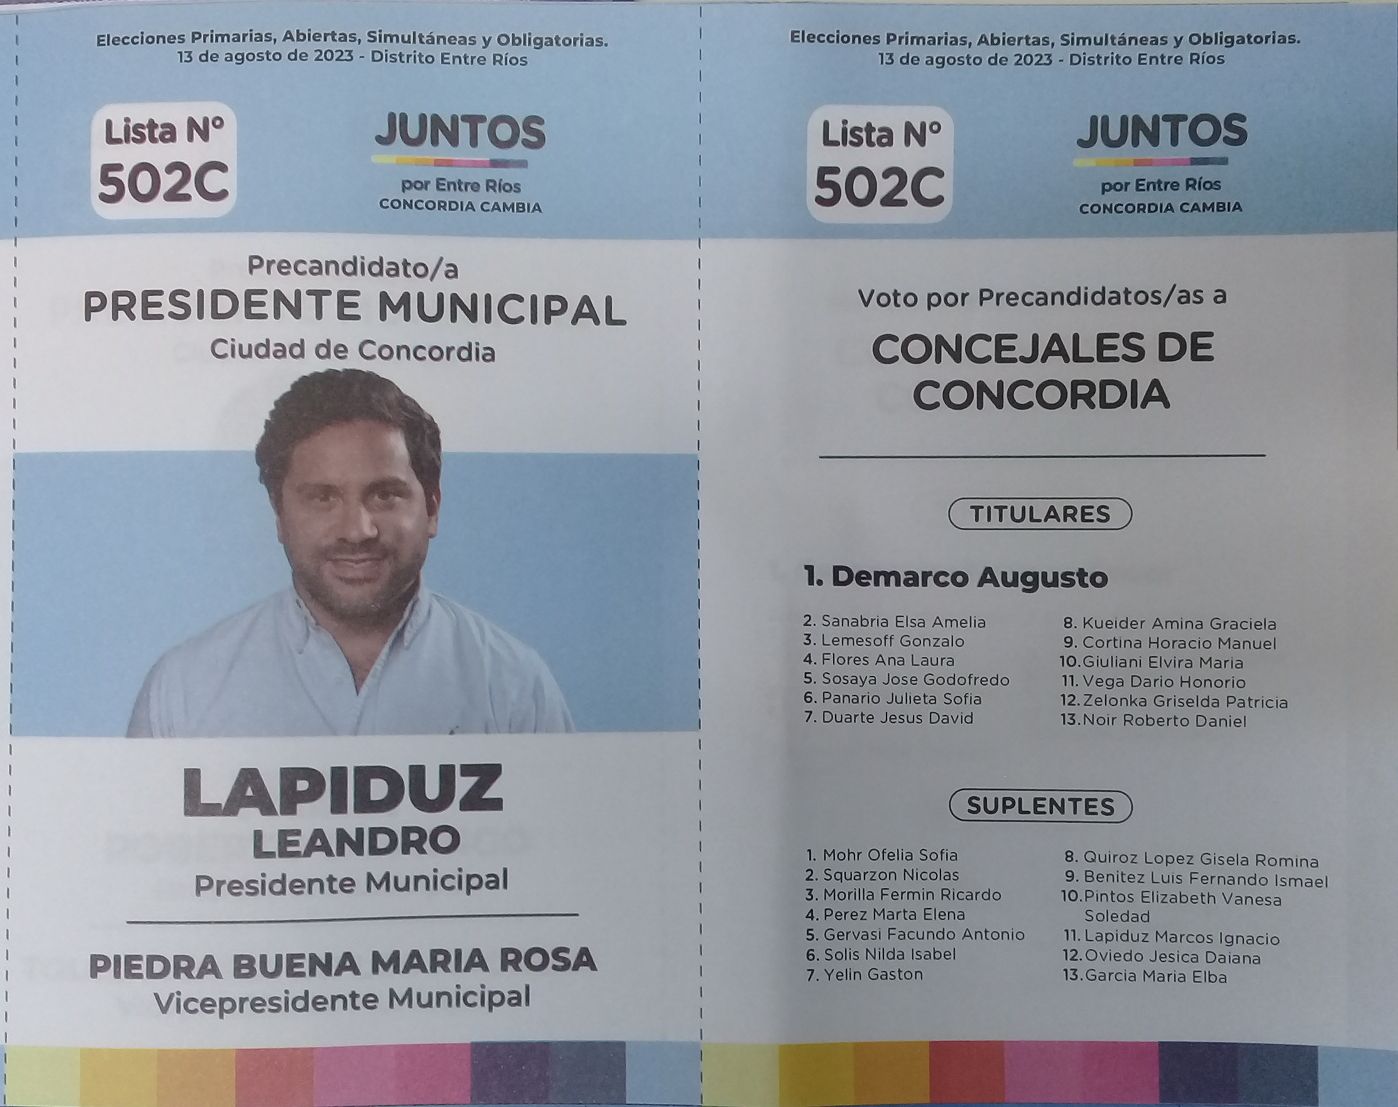 Lista 502: Juntos por Entre Ríos - Leandro Lapiduz.